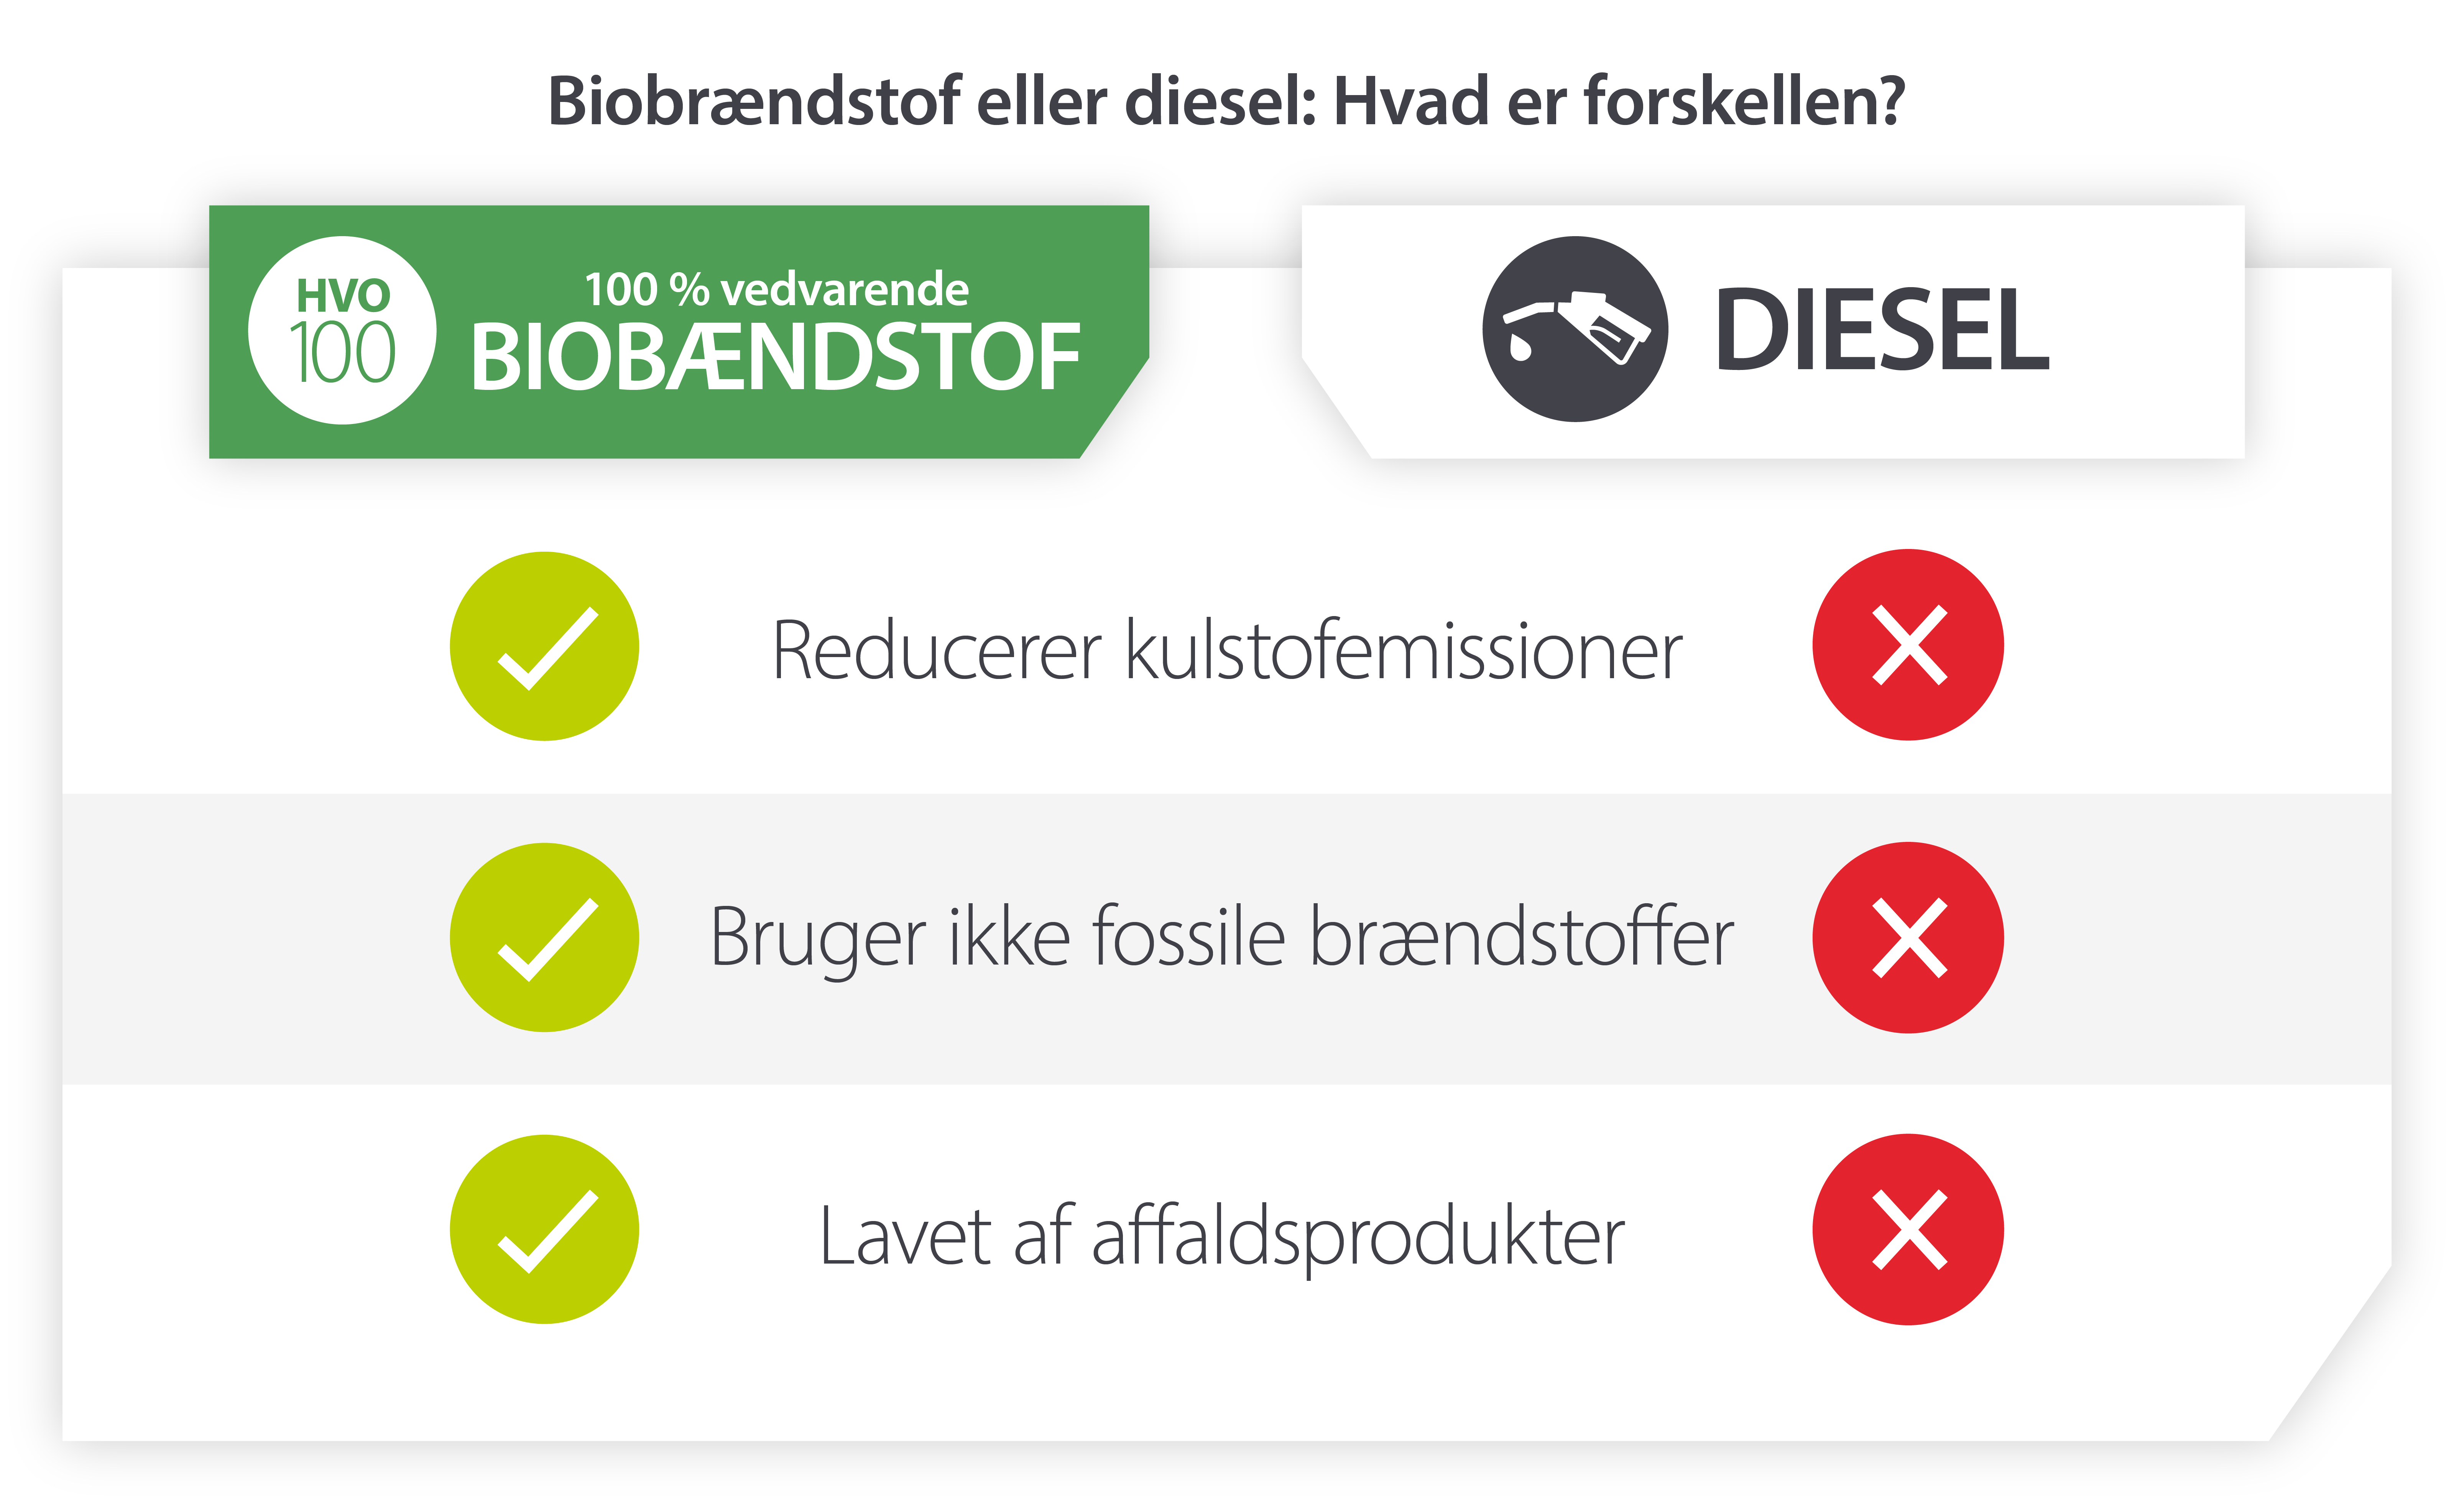 HVO biodiesel vs. diesel